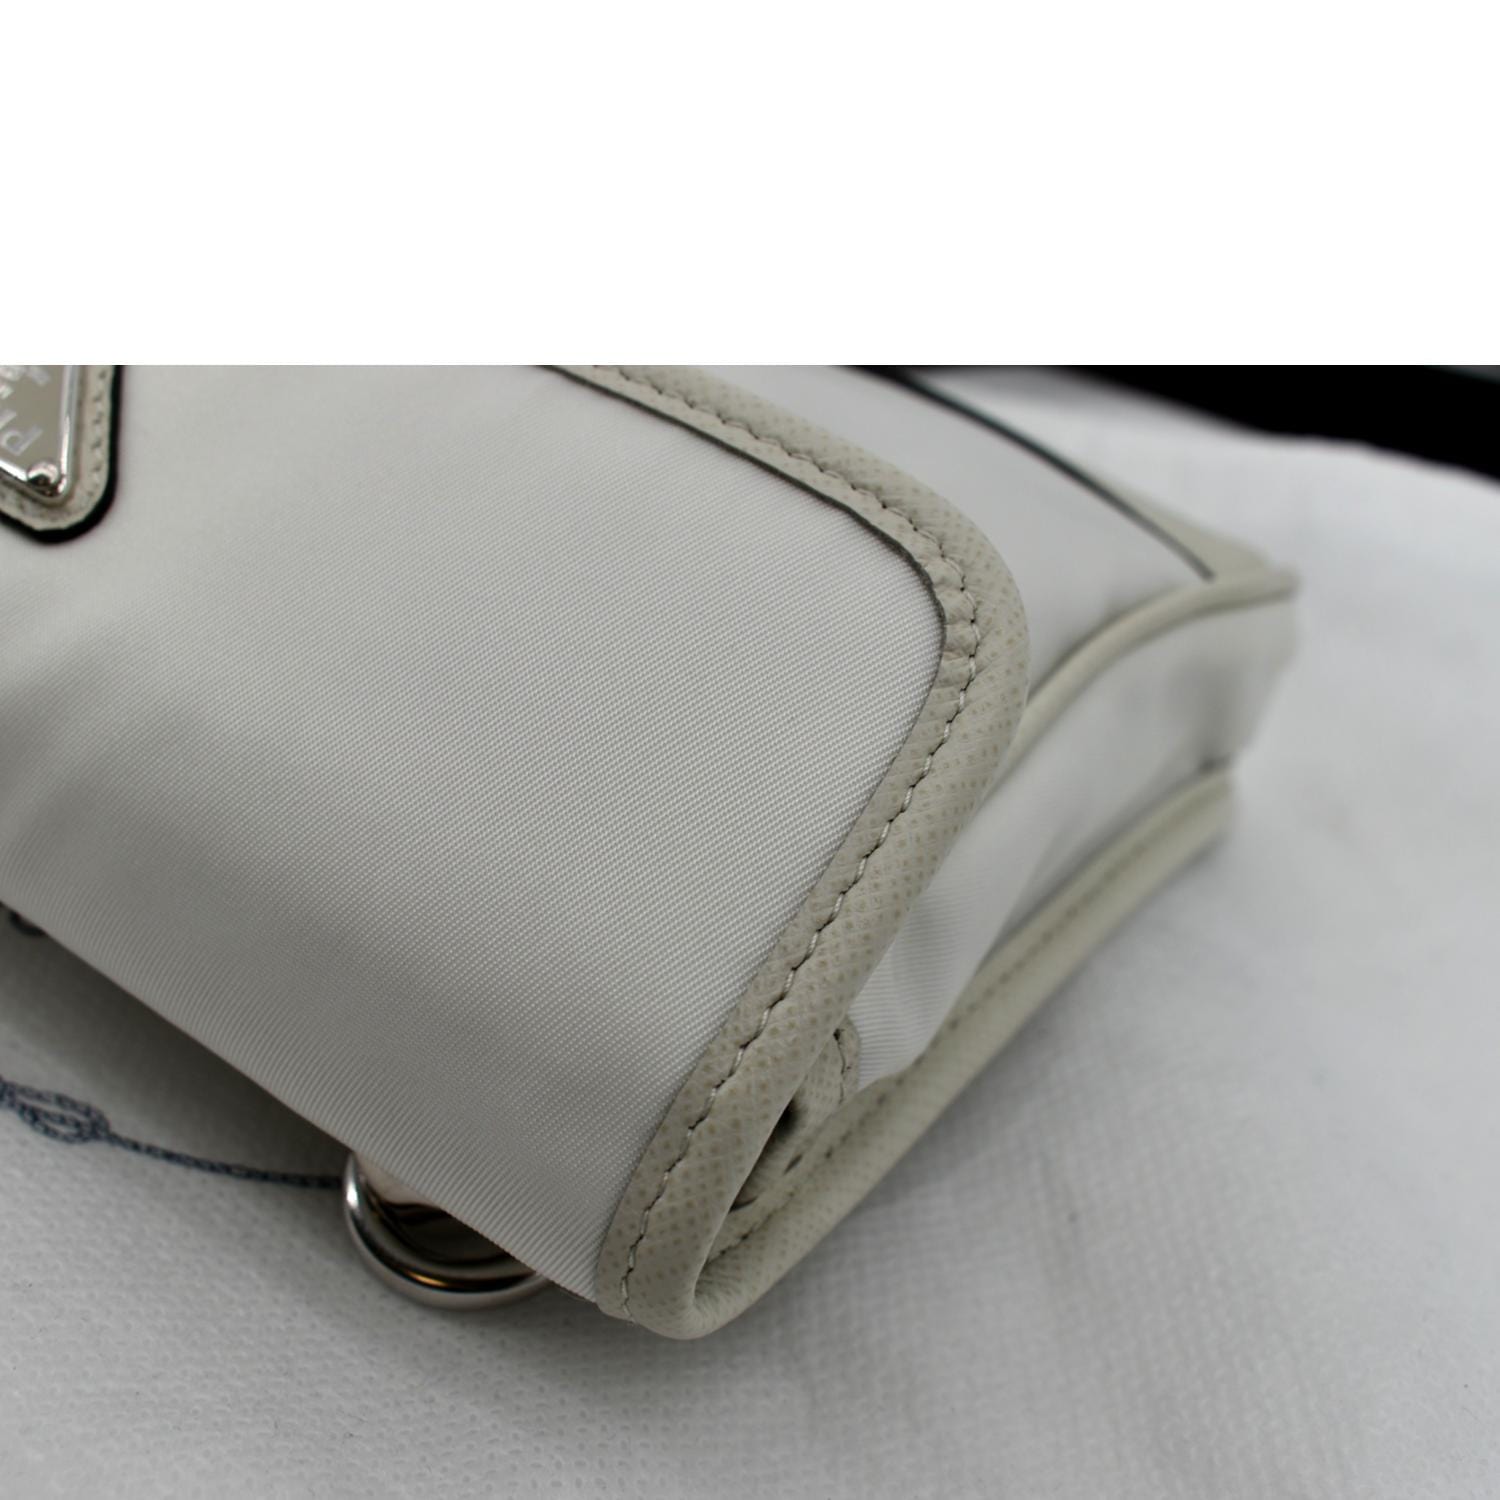 Re-Nylon and Saffiano leather smartphone case